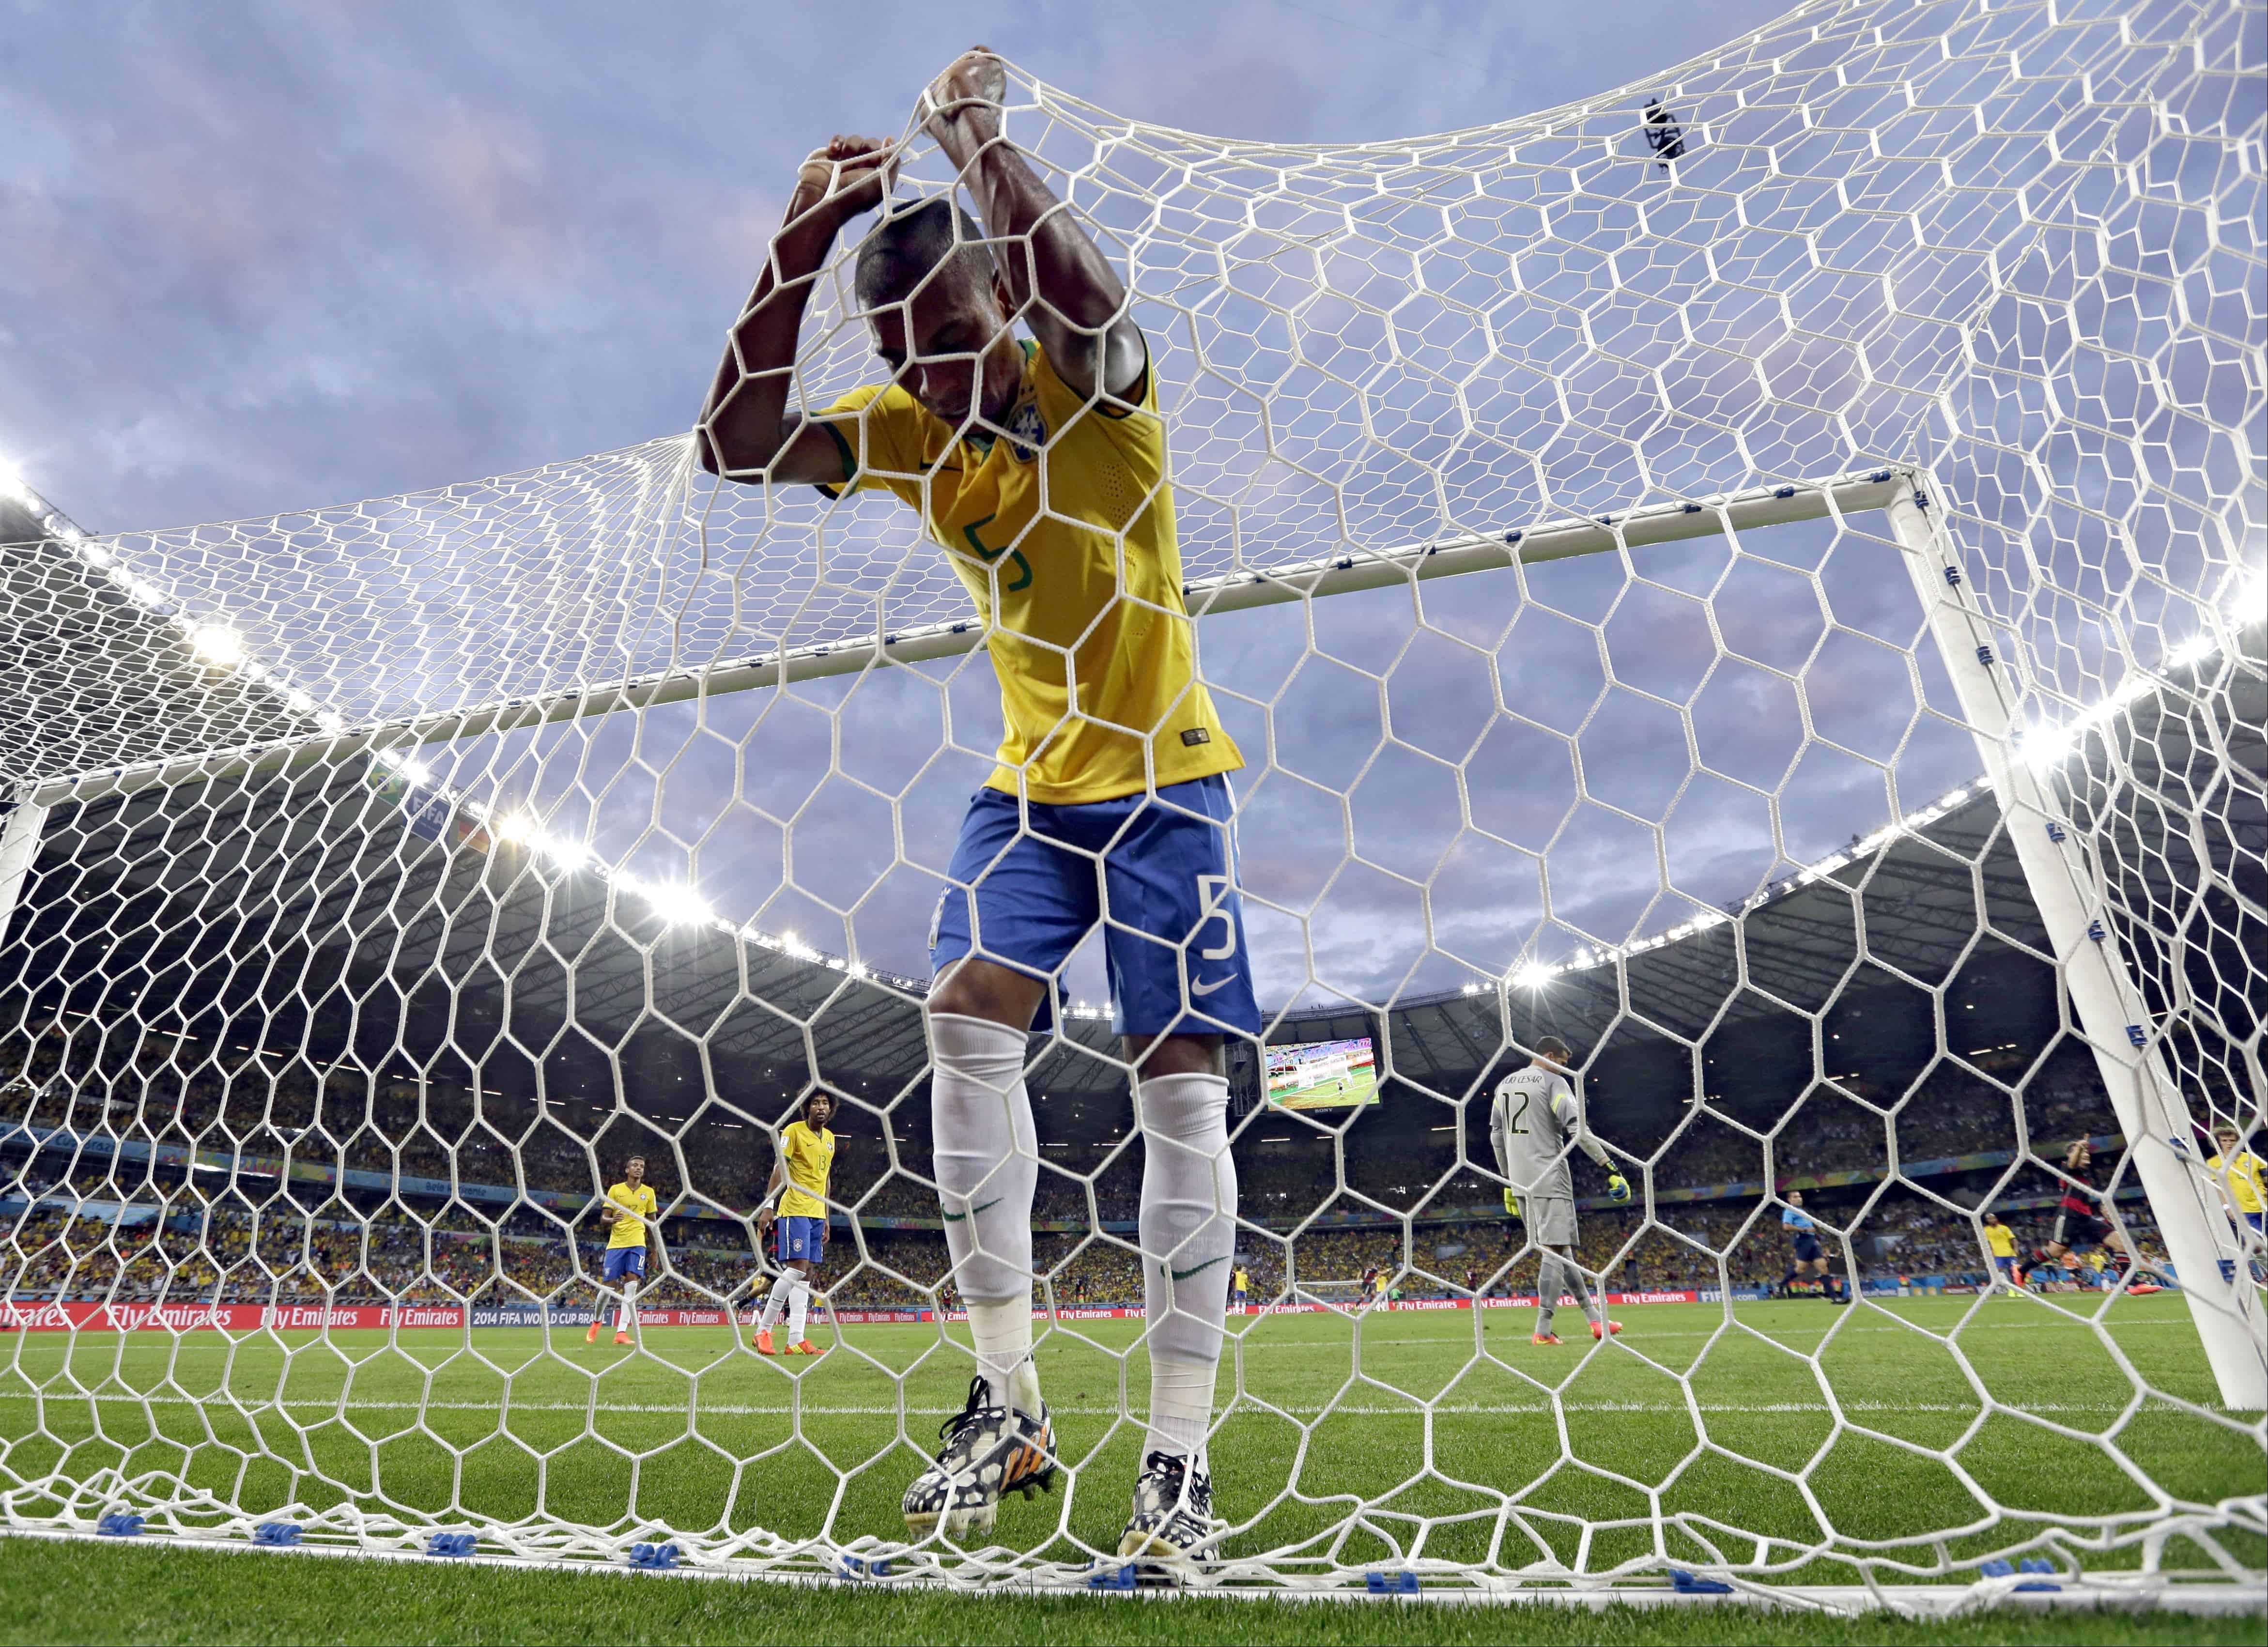 Fernandinho de Brasil reacciona después de que Toni Kroos de Alemania anotó el tercer gol de su equipo durante el partido de fútbol semifinal de la Copa Mundial entre Brasil y Alemania en el Estadio Mineirao en Belo Horizonte, Brasil, el martes 8 de julio de 2014. Alemania ganó el partido 7-1.